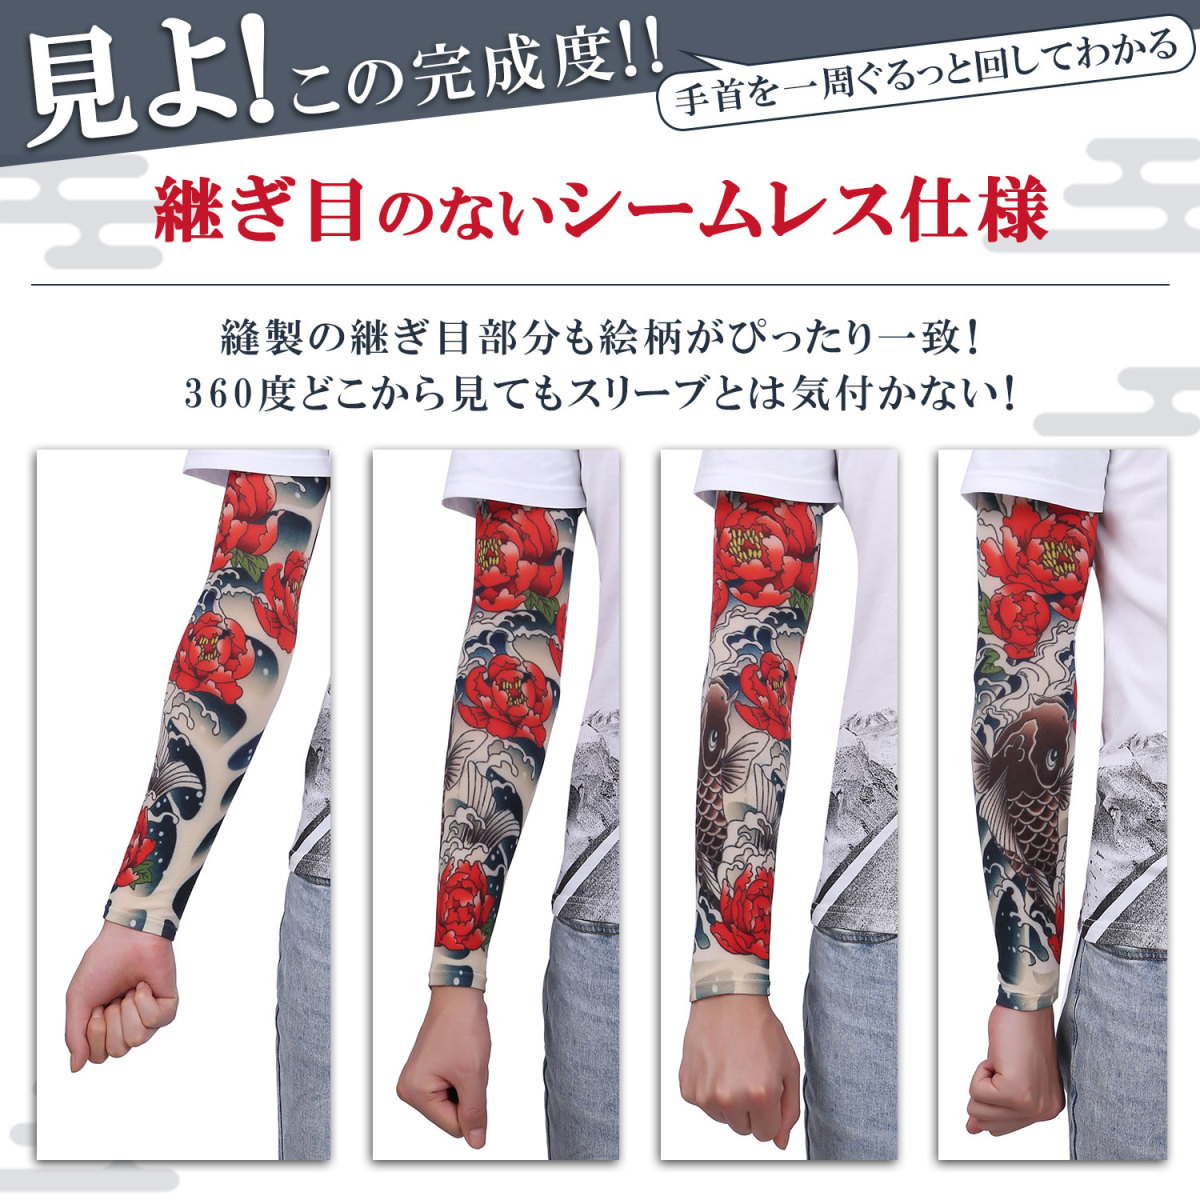 ta палец на ноге рукав гетры для рук опора tatto татуировка inserting ... рука модный Япония дизайн . Skull to соперник рисунок настоящий 4 листов 